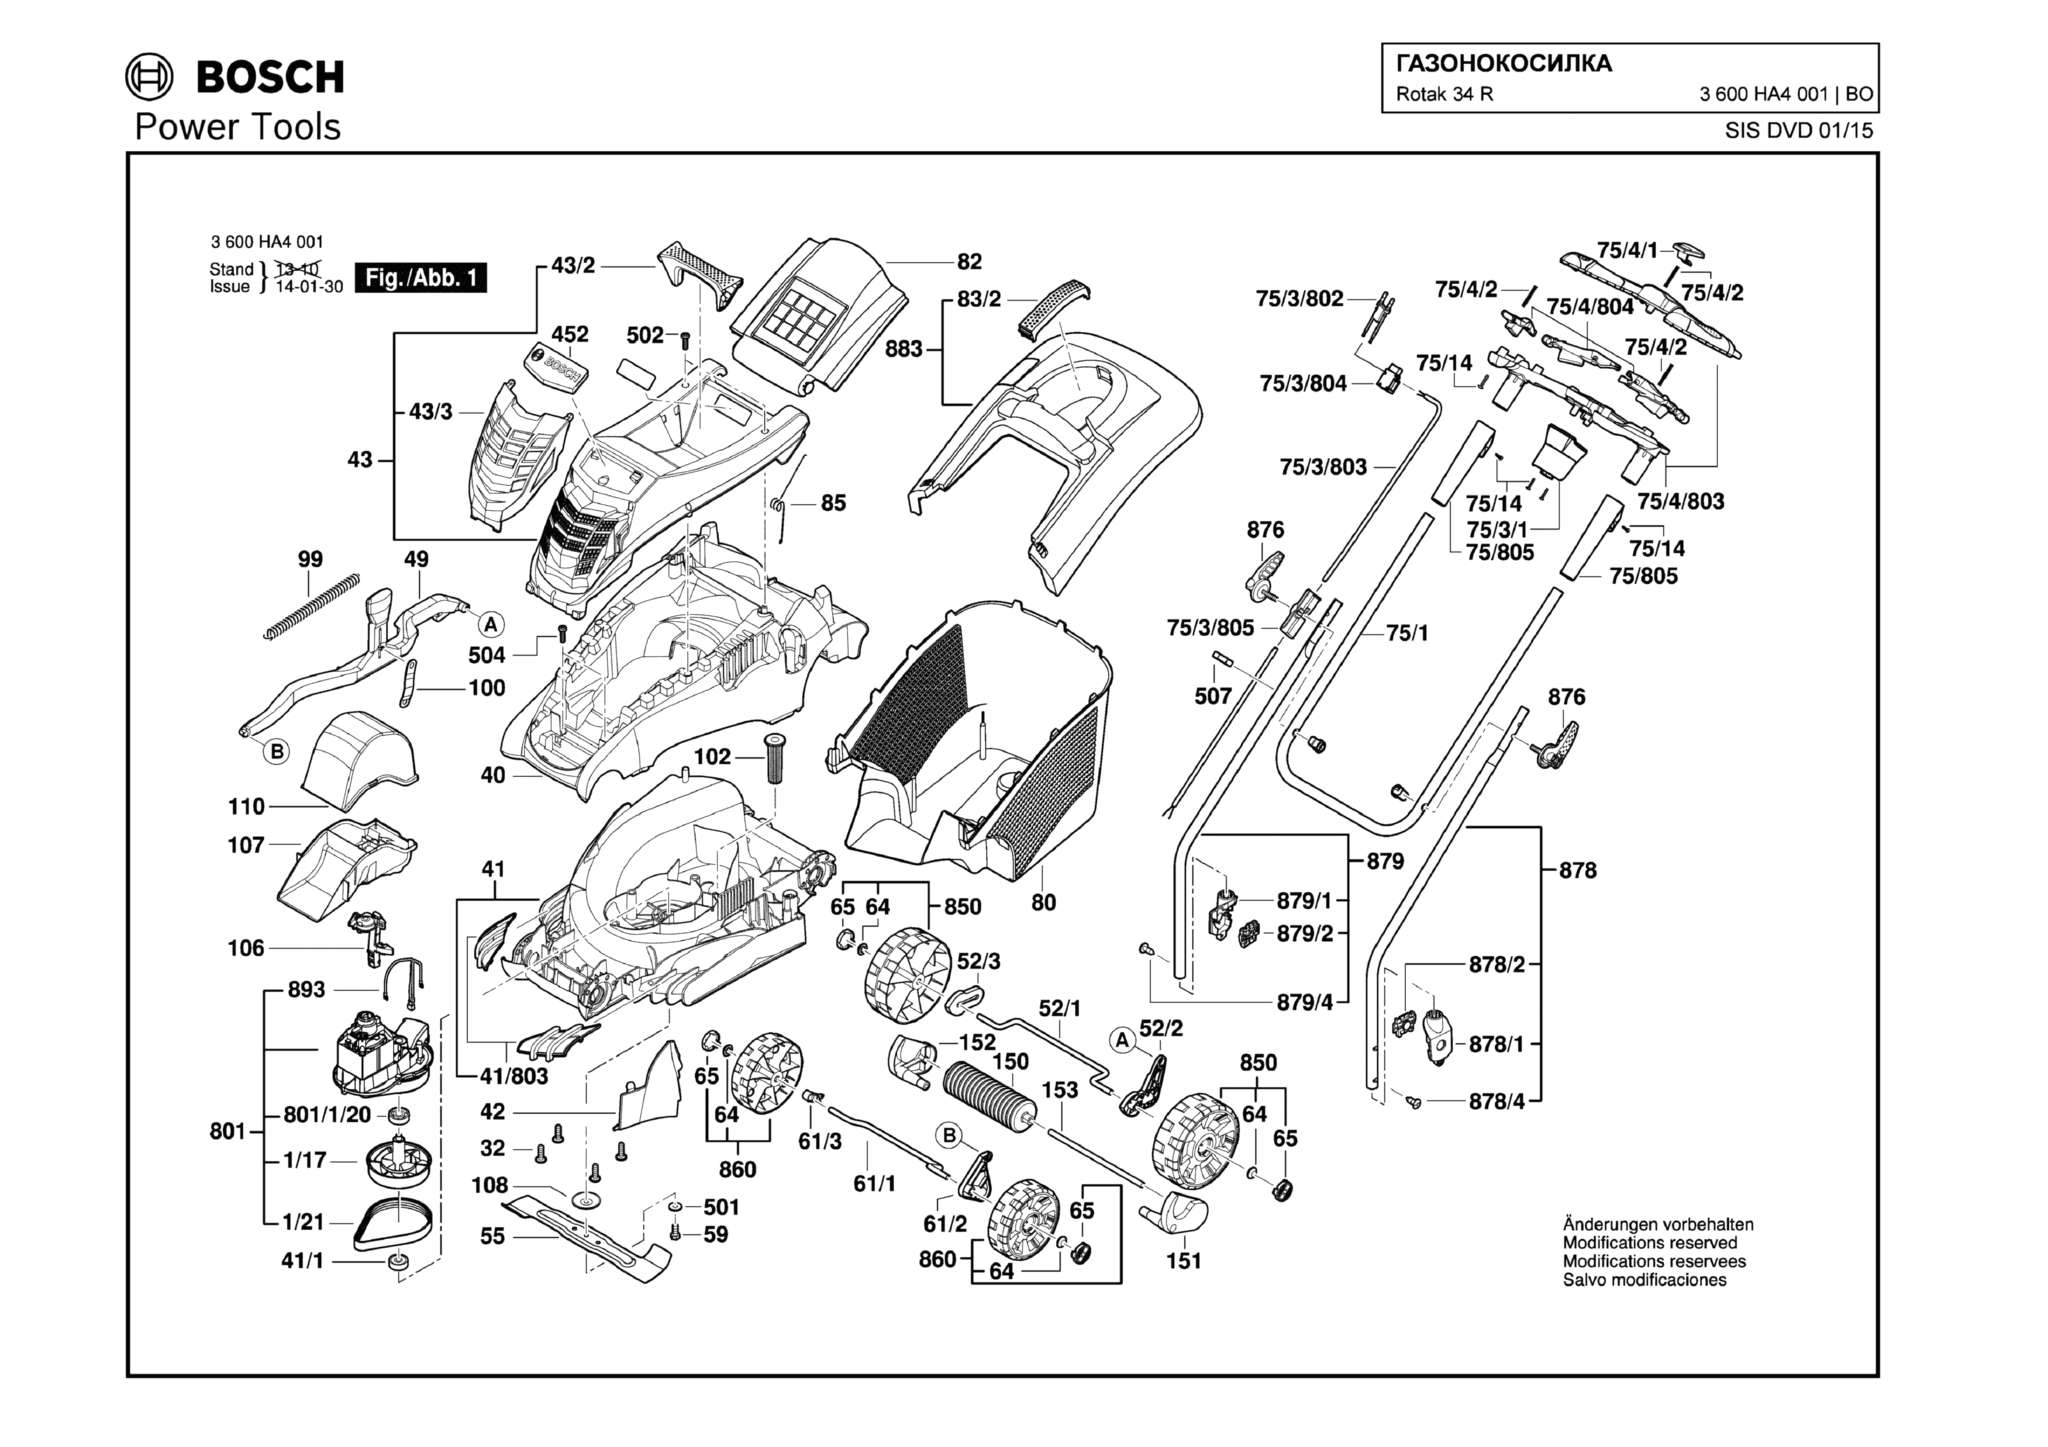 Запчасти, схема и деталировка Bosch ROTAK 34 R (ТИП 3600HA4001)